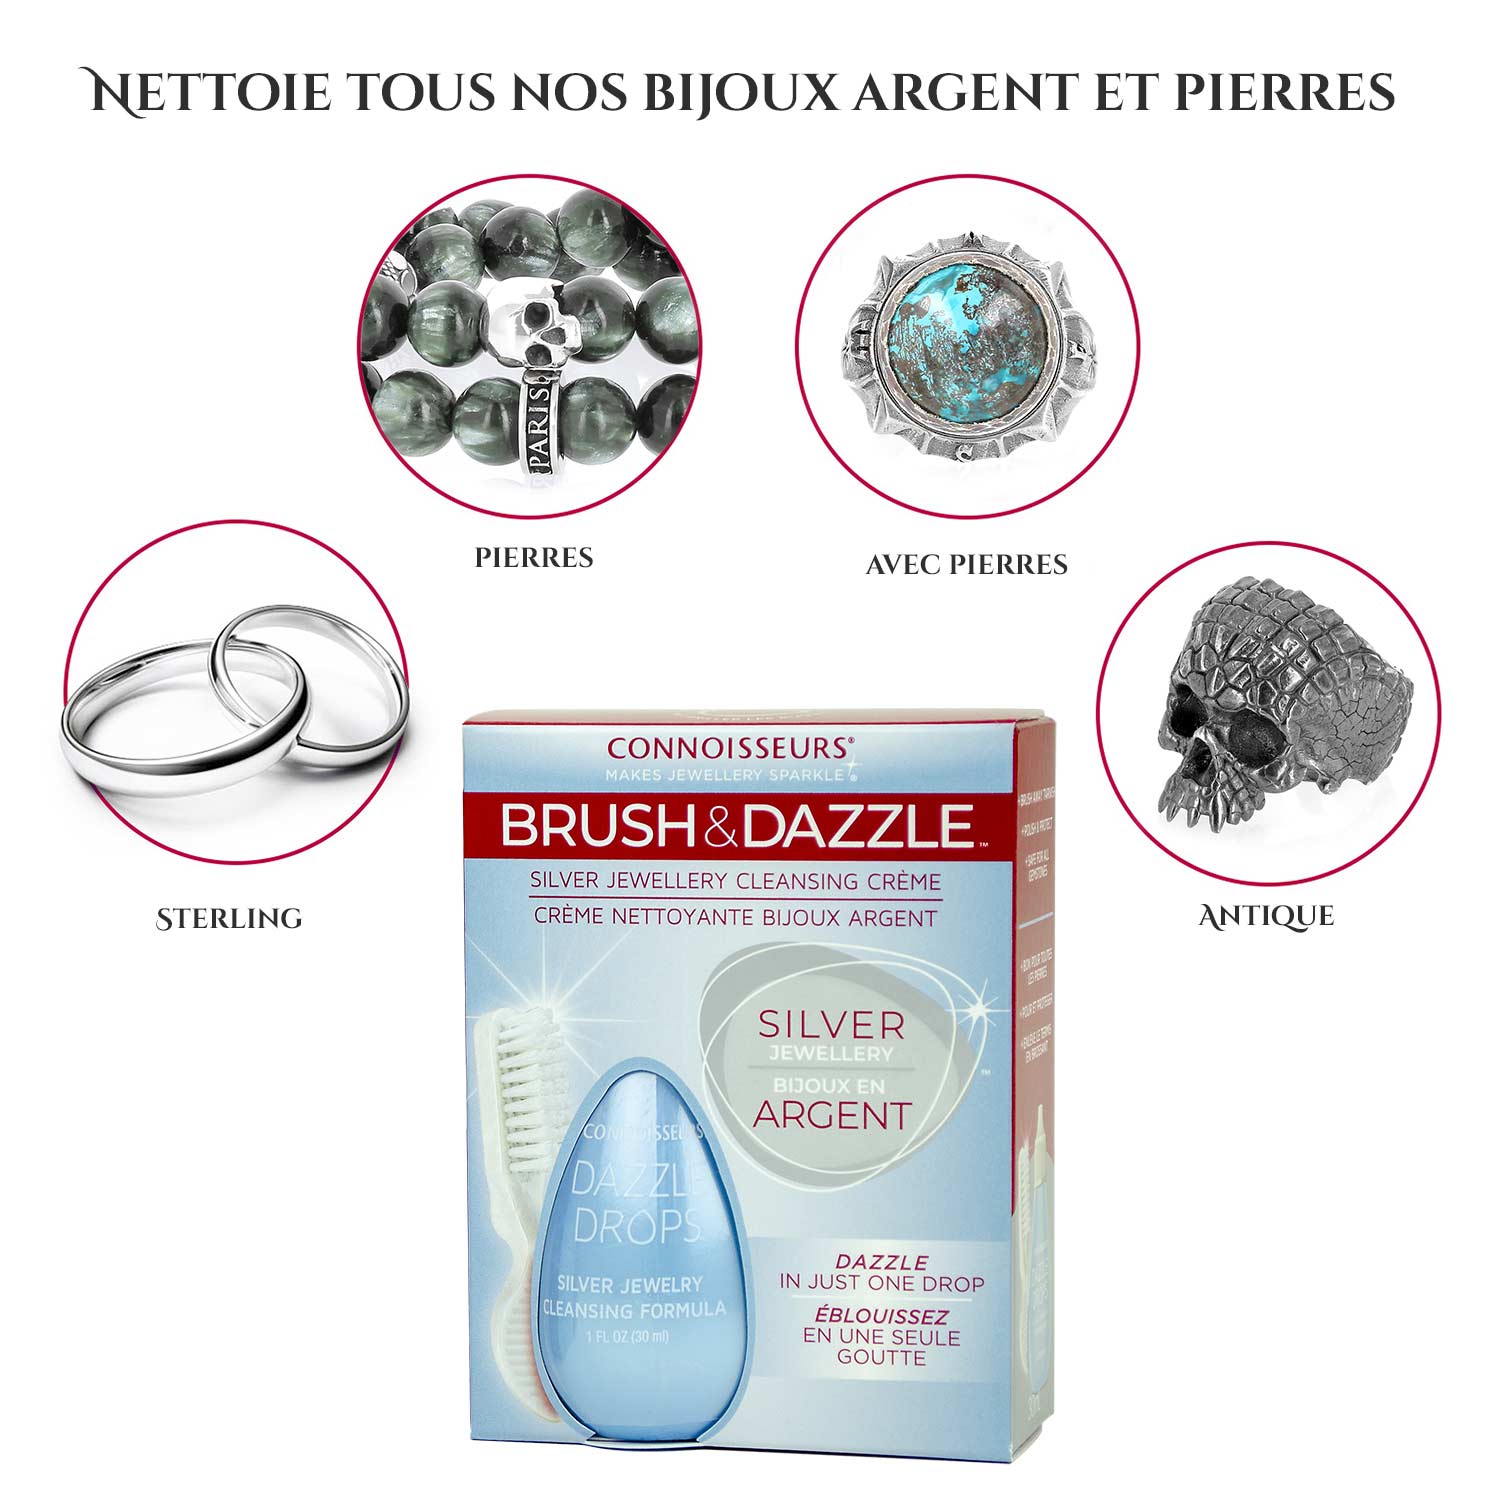 Crème nettoyante pour bijoux argent Dazzle Drops by Connoisseurs©